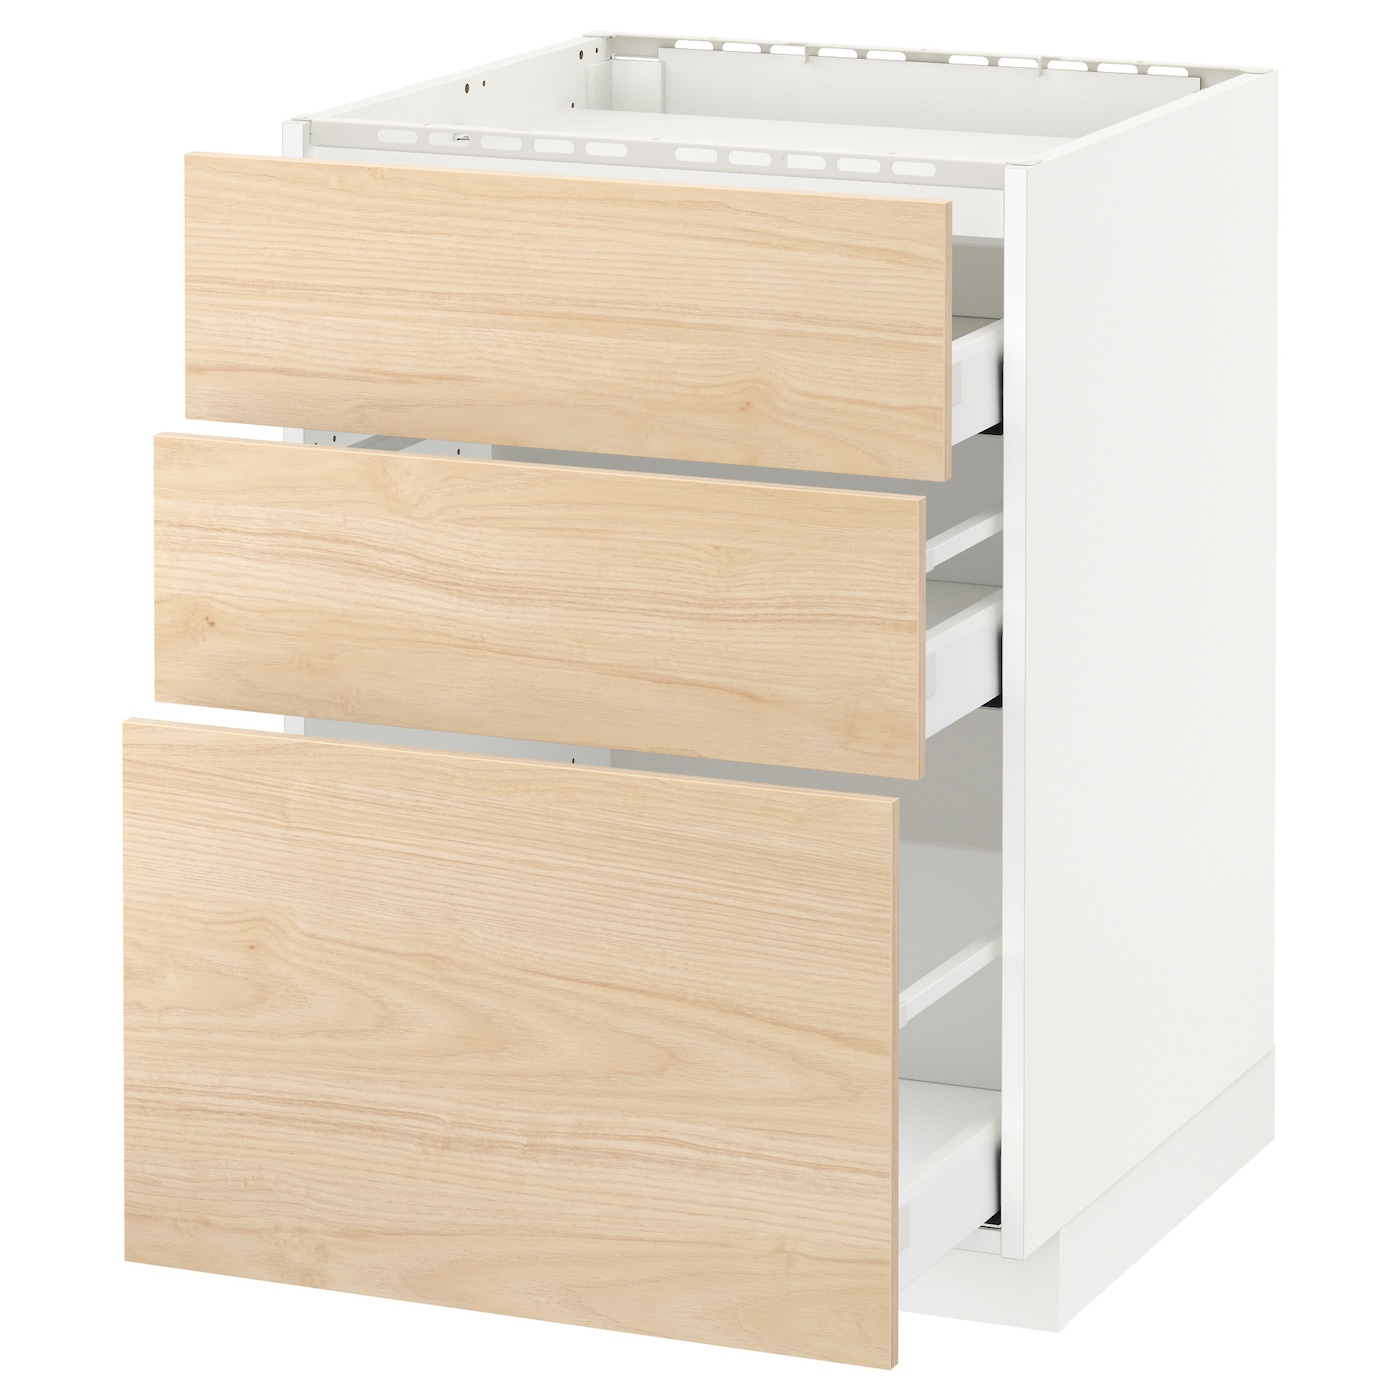 Напольный шкаф  - IKEA METOD MAXIMERA, 88x61,6x80см, белый/светло-коричневый, МЕТОД МАКСИМЕРА ИКЕА